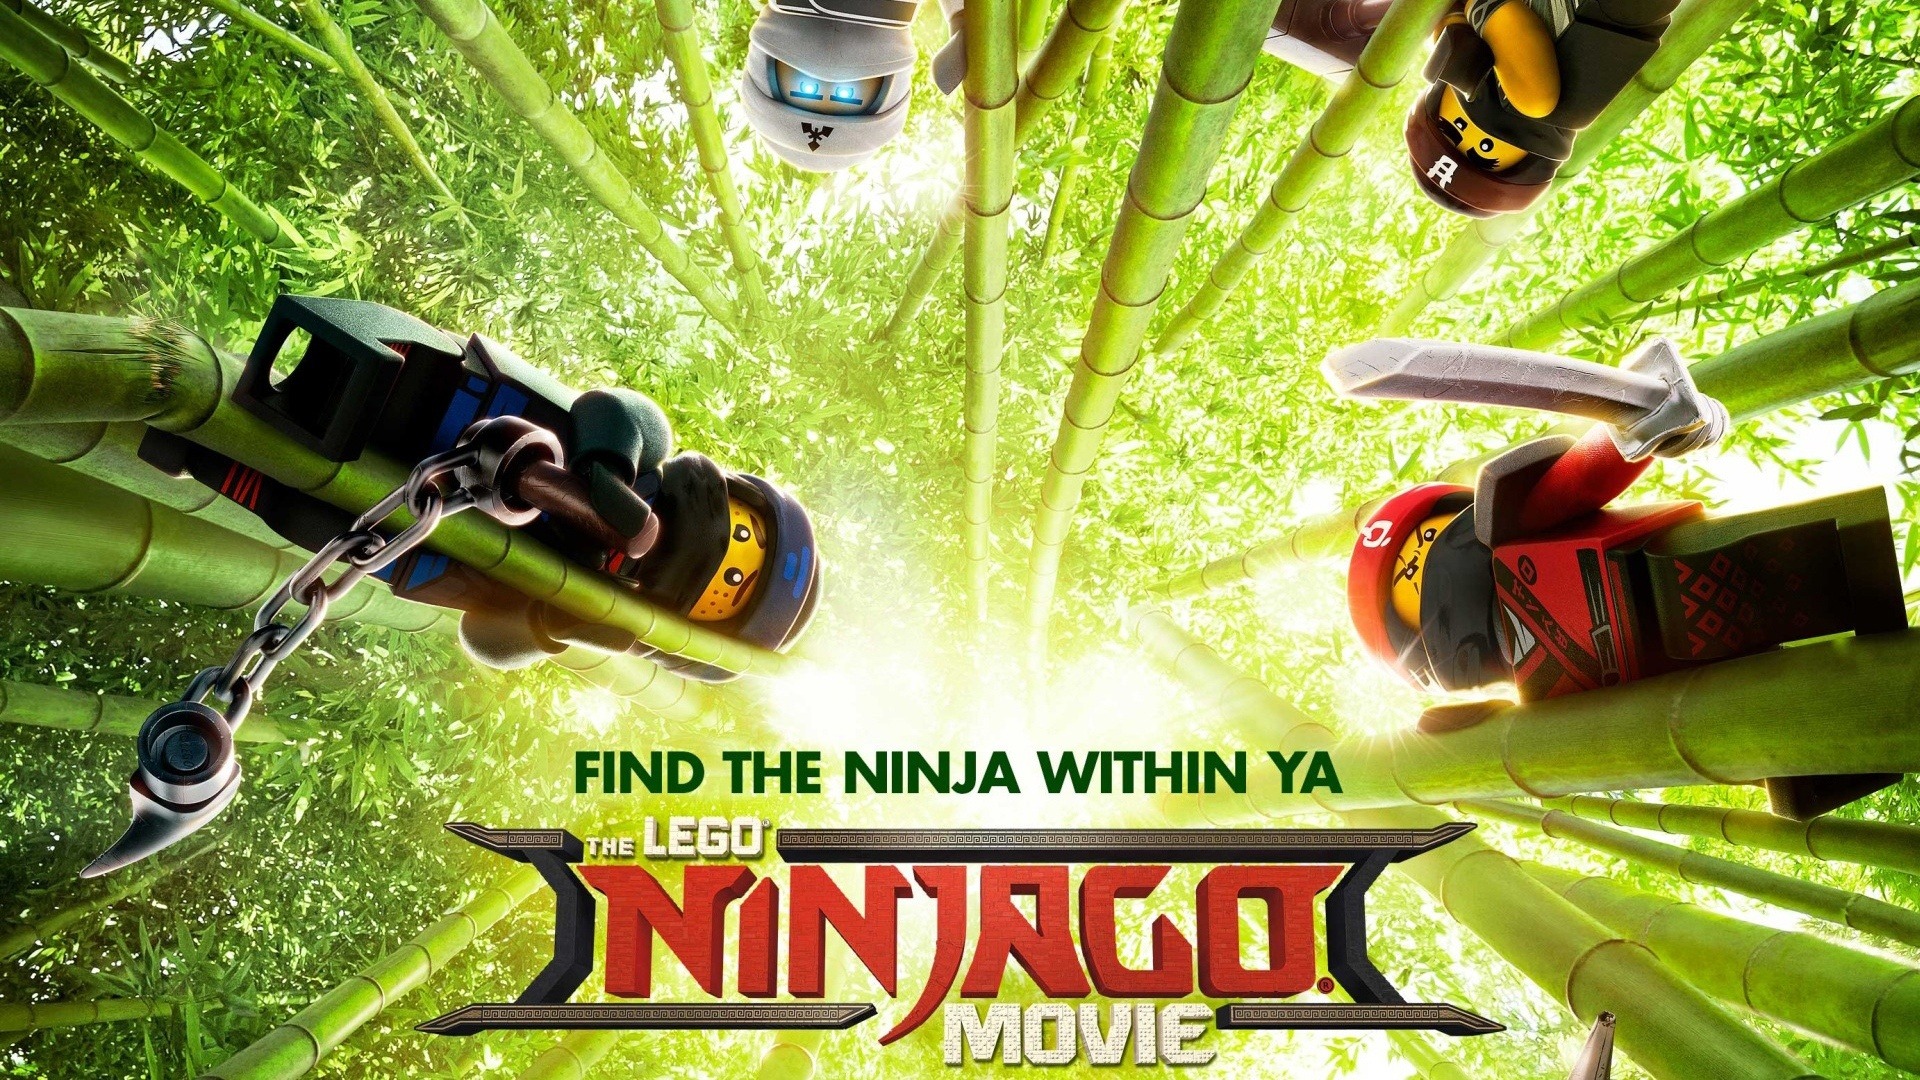 lego ninjago movie